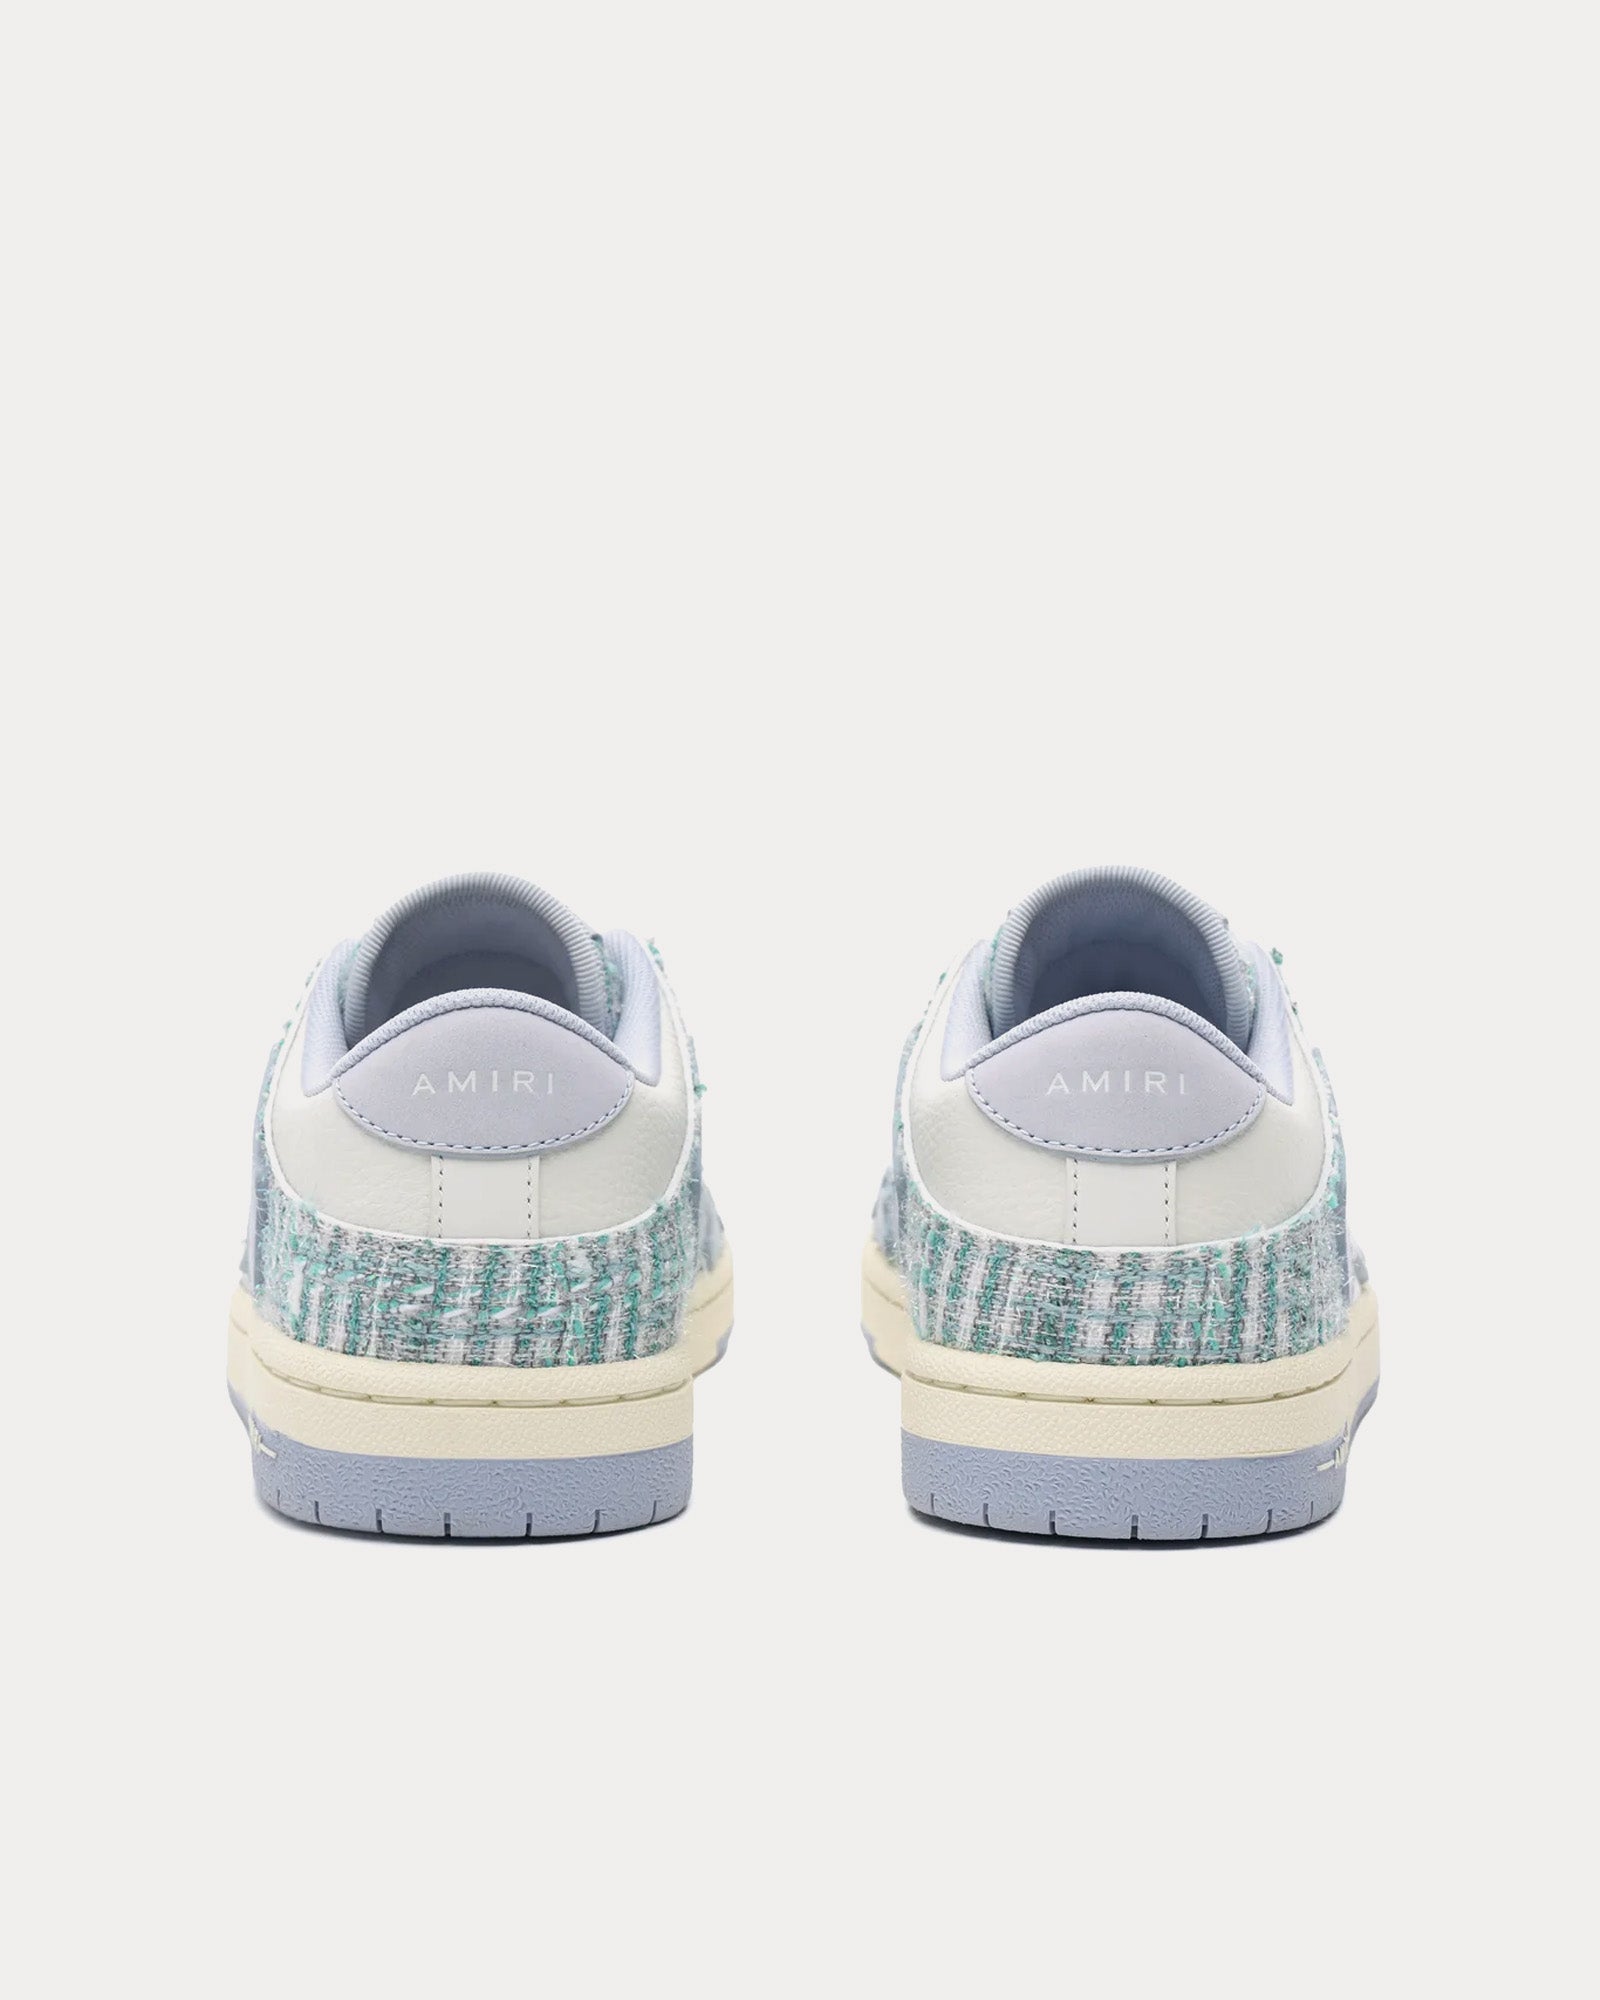 AMIRI - Skel-Top Boucle Grey / Blue Low Top Sneakers